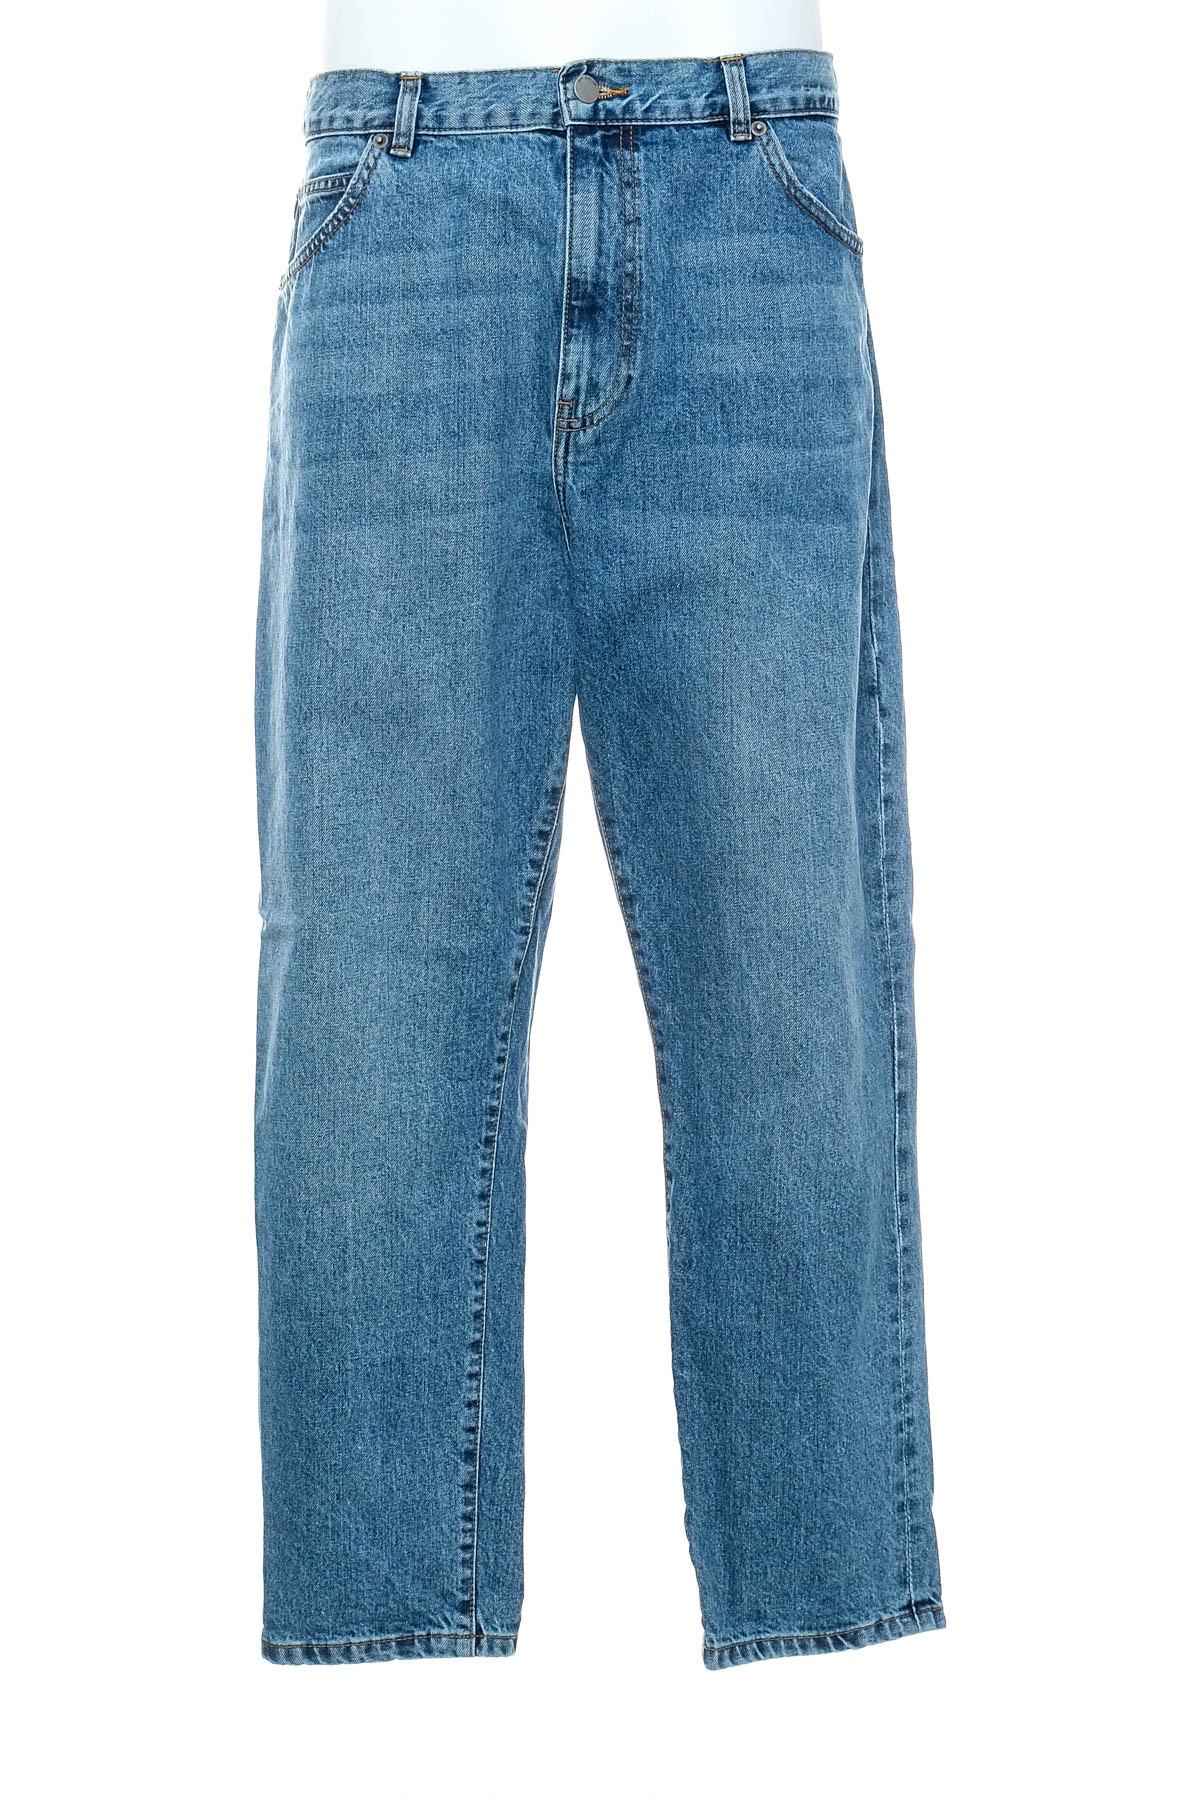 Men's jeans - DR Denim - 0